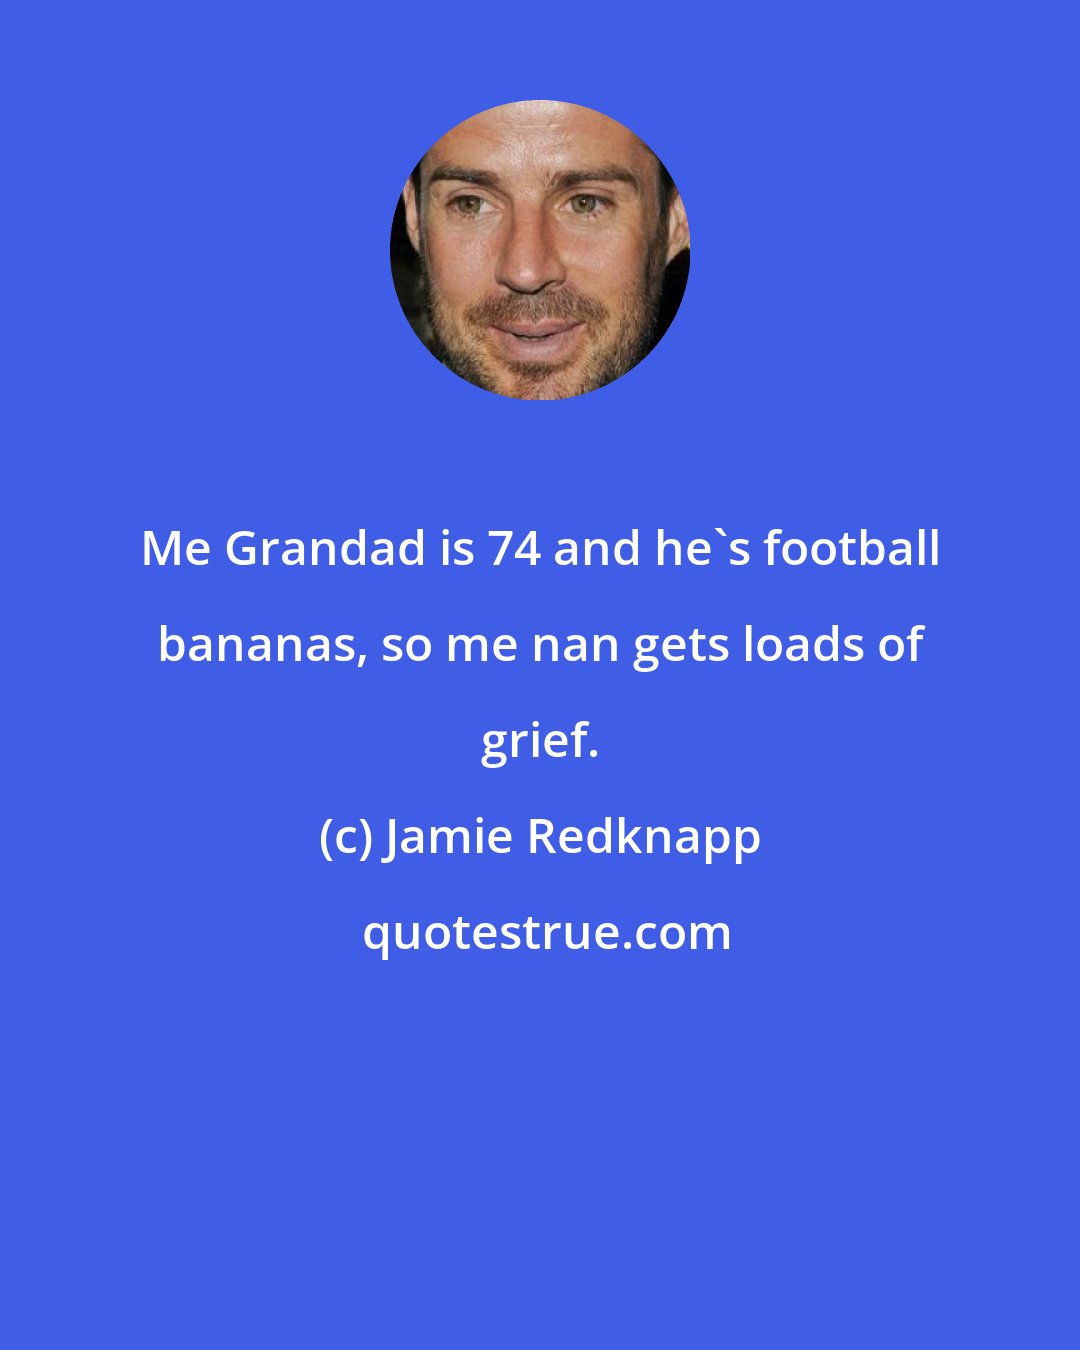 Jamie Redknapp: Me Grandad is 74 and he's football bananas, so me nan gets loads of grief.